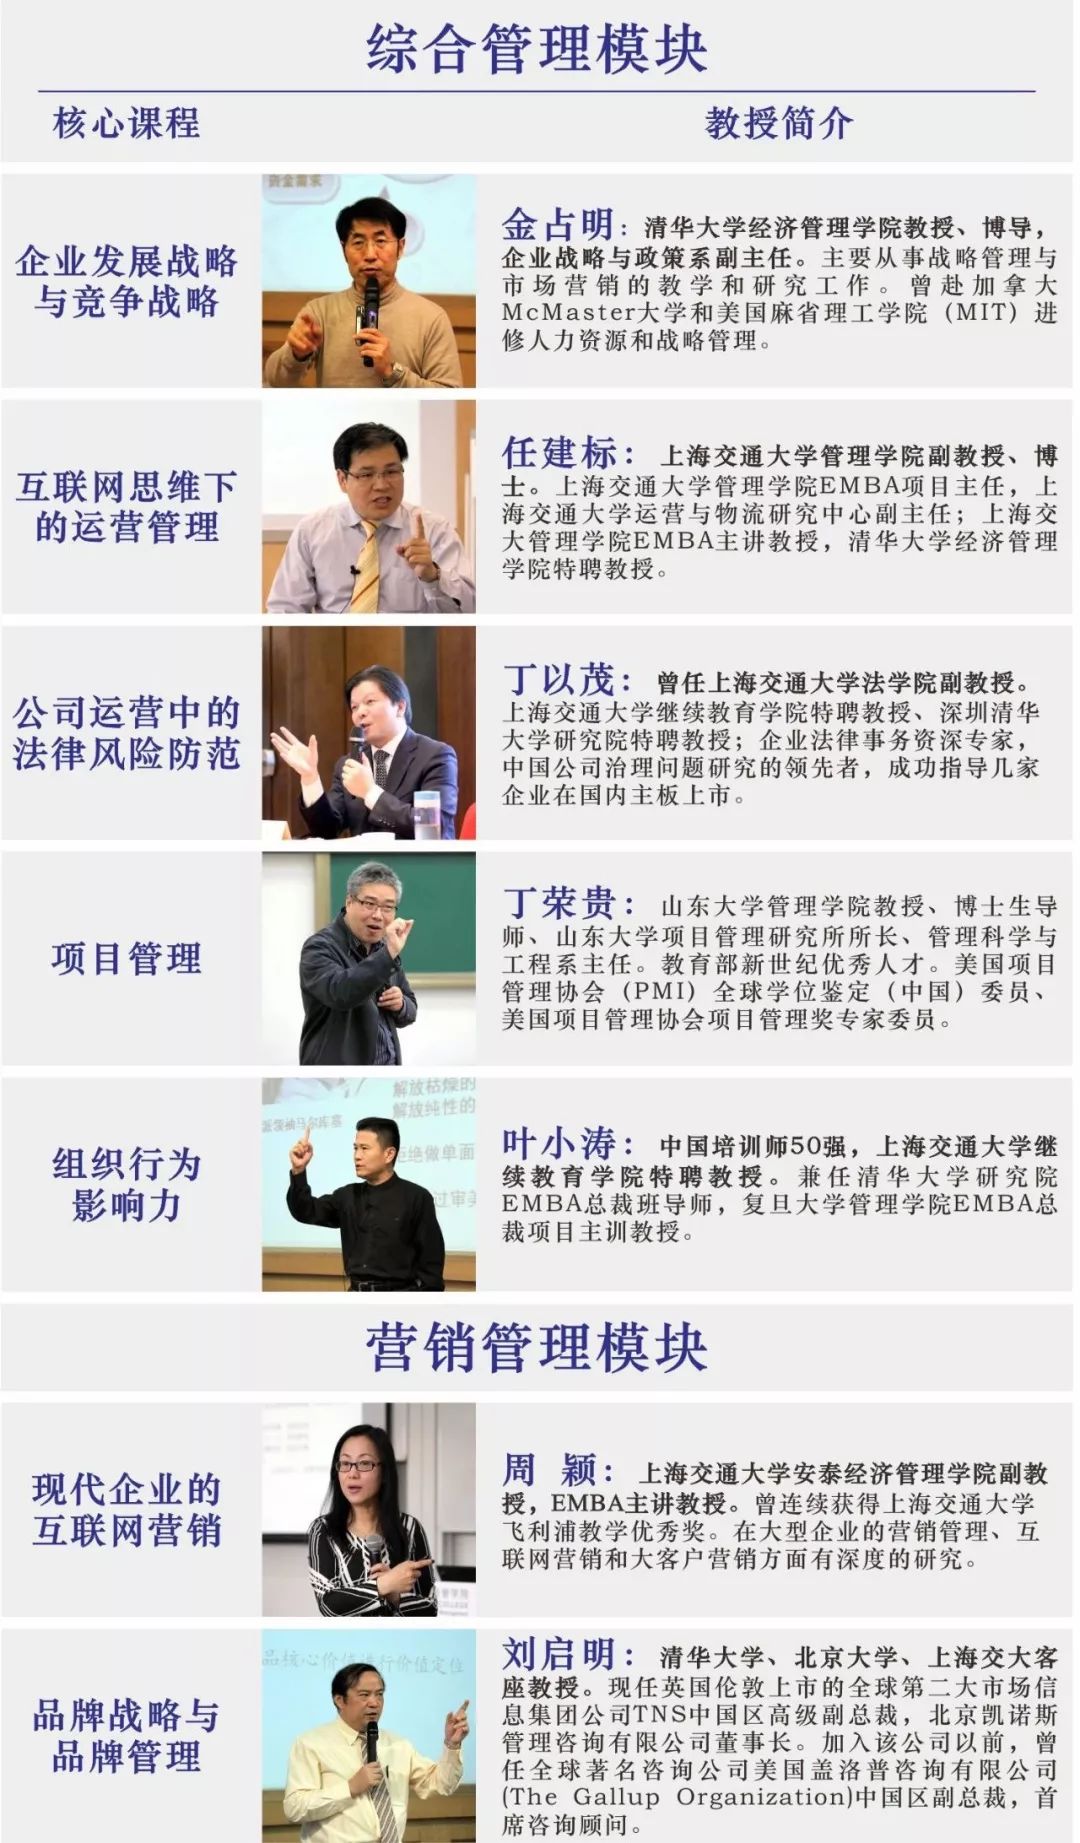 上海交通大学创新管理CMBA硕士课程高级研修班讲义